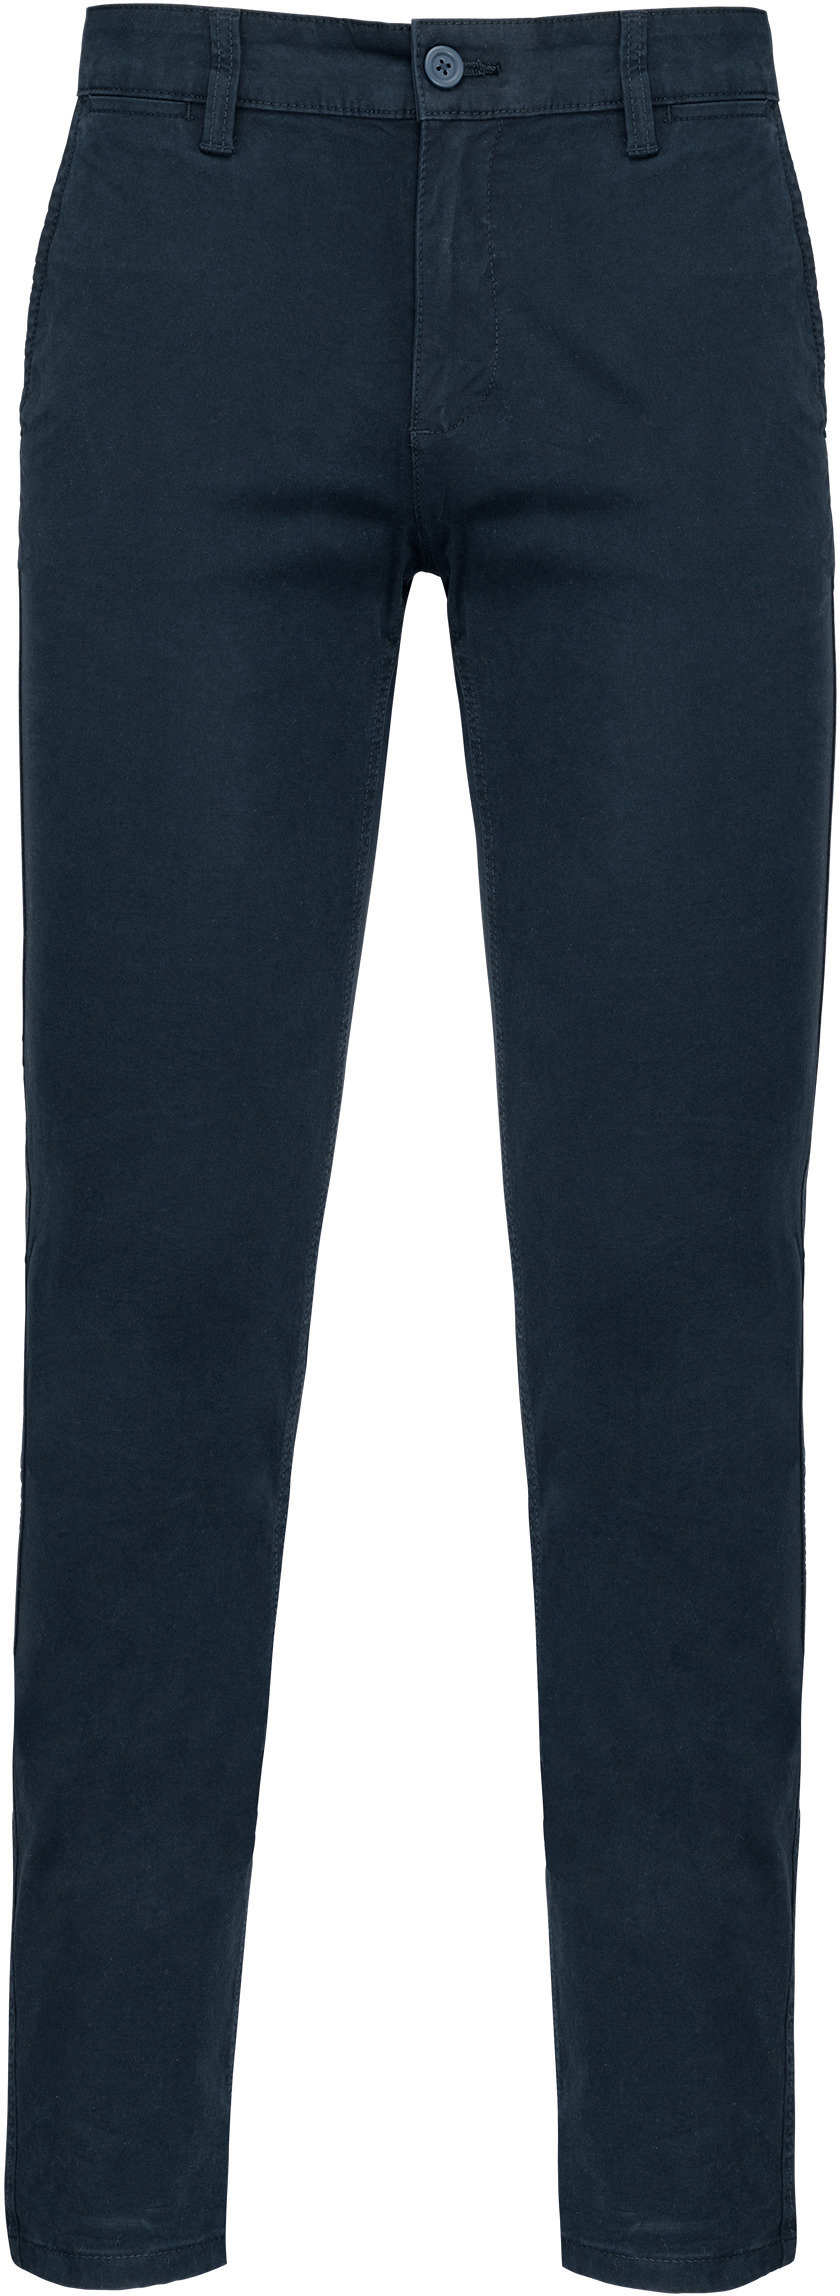 Pánské kalhoty CHINO Barva: dark navy, Velikost: 54